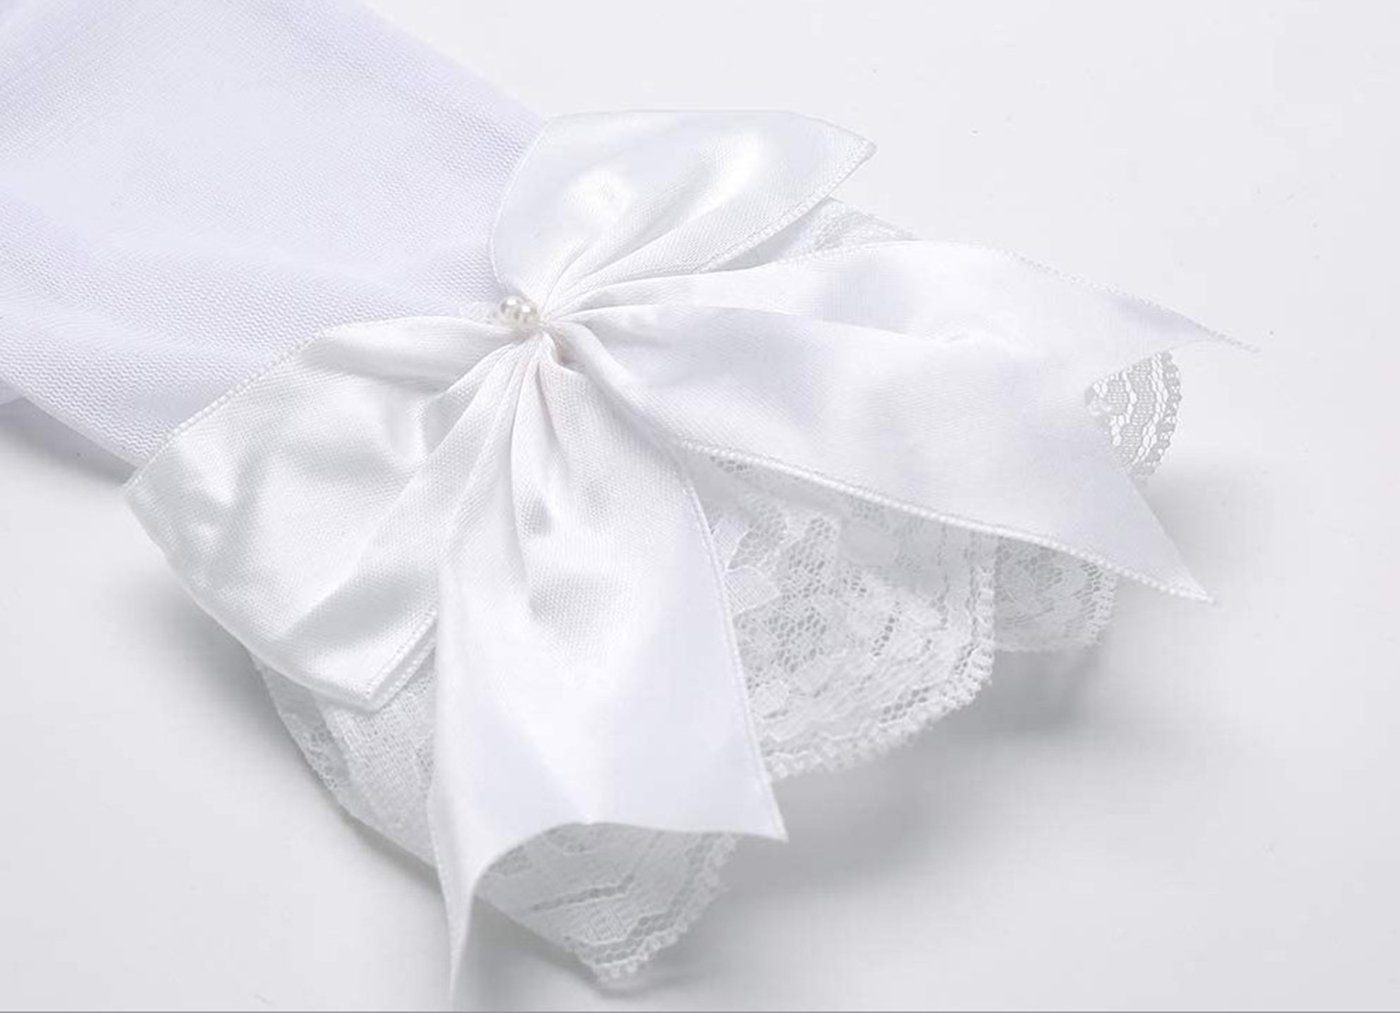 SCHUTA Abendhandschuhe Braut Brautkleider, Weiß Kleiderhandschuhe,Schmetterlingsknotenhandschuhe